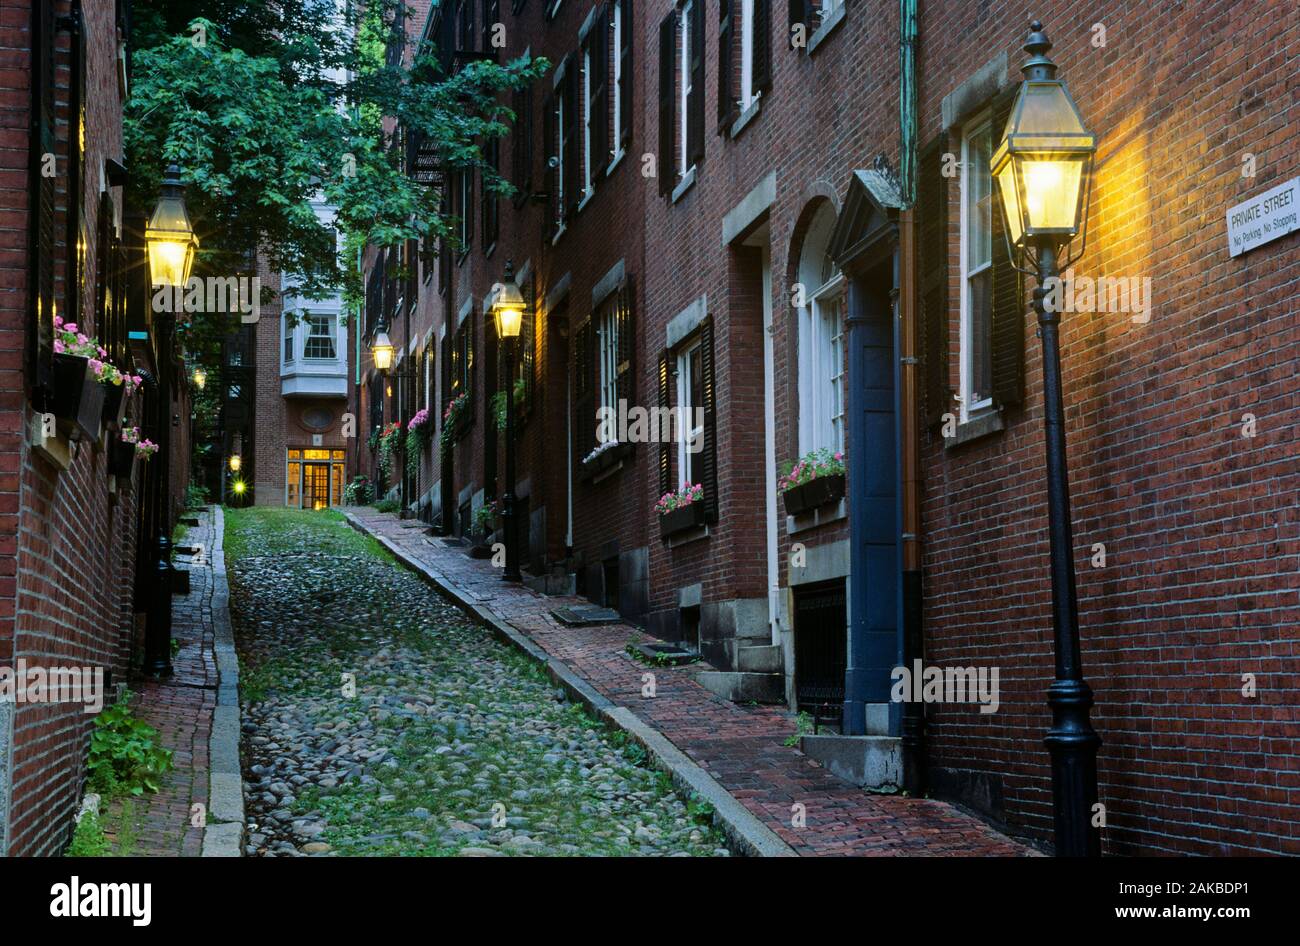 Steep narrow street in town, Acorn Street, Beacon Hill, Boston, Massachusetts, USA Stock Photo